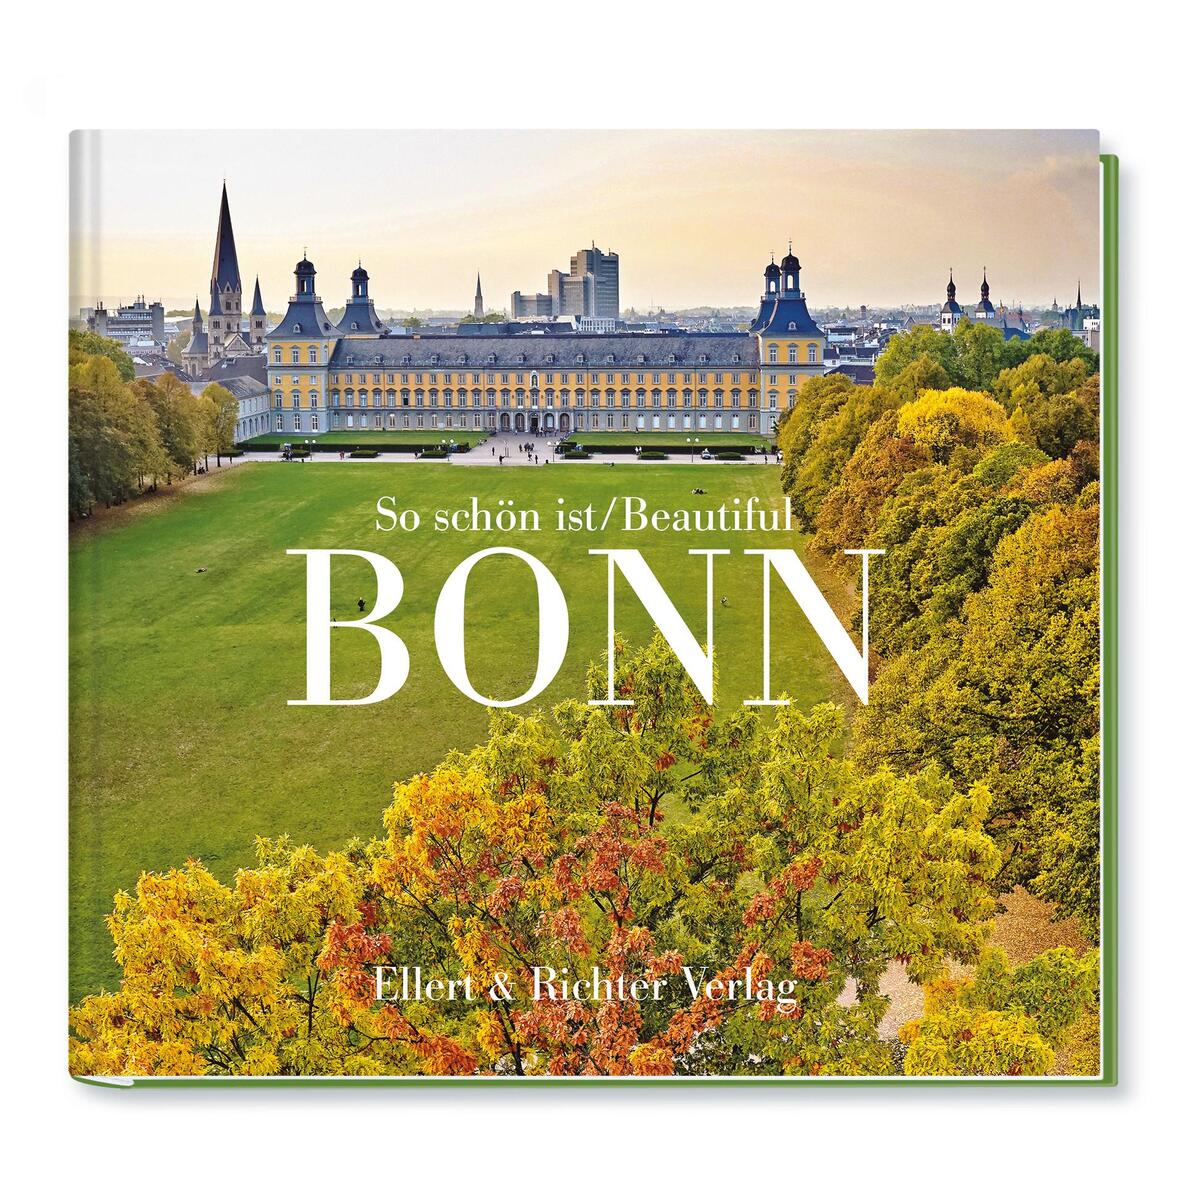 So schön ist Bonn / Beautiful Bonn von Ellert & Richter Verlag G